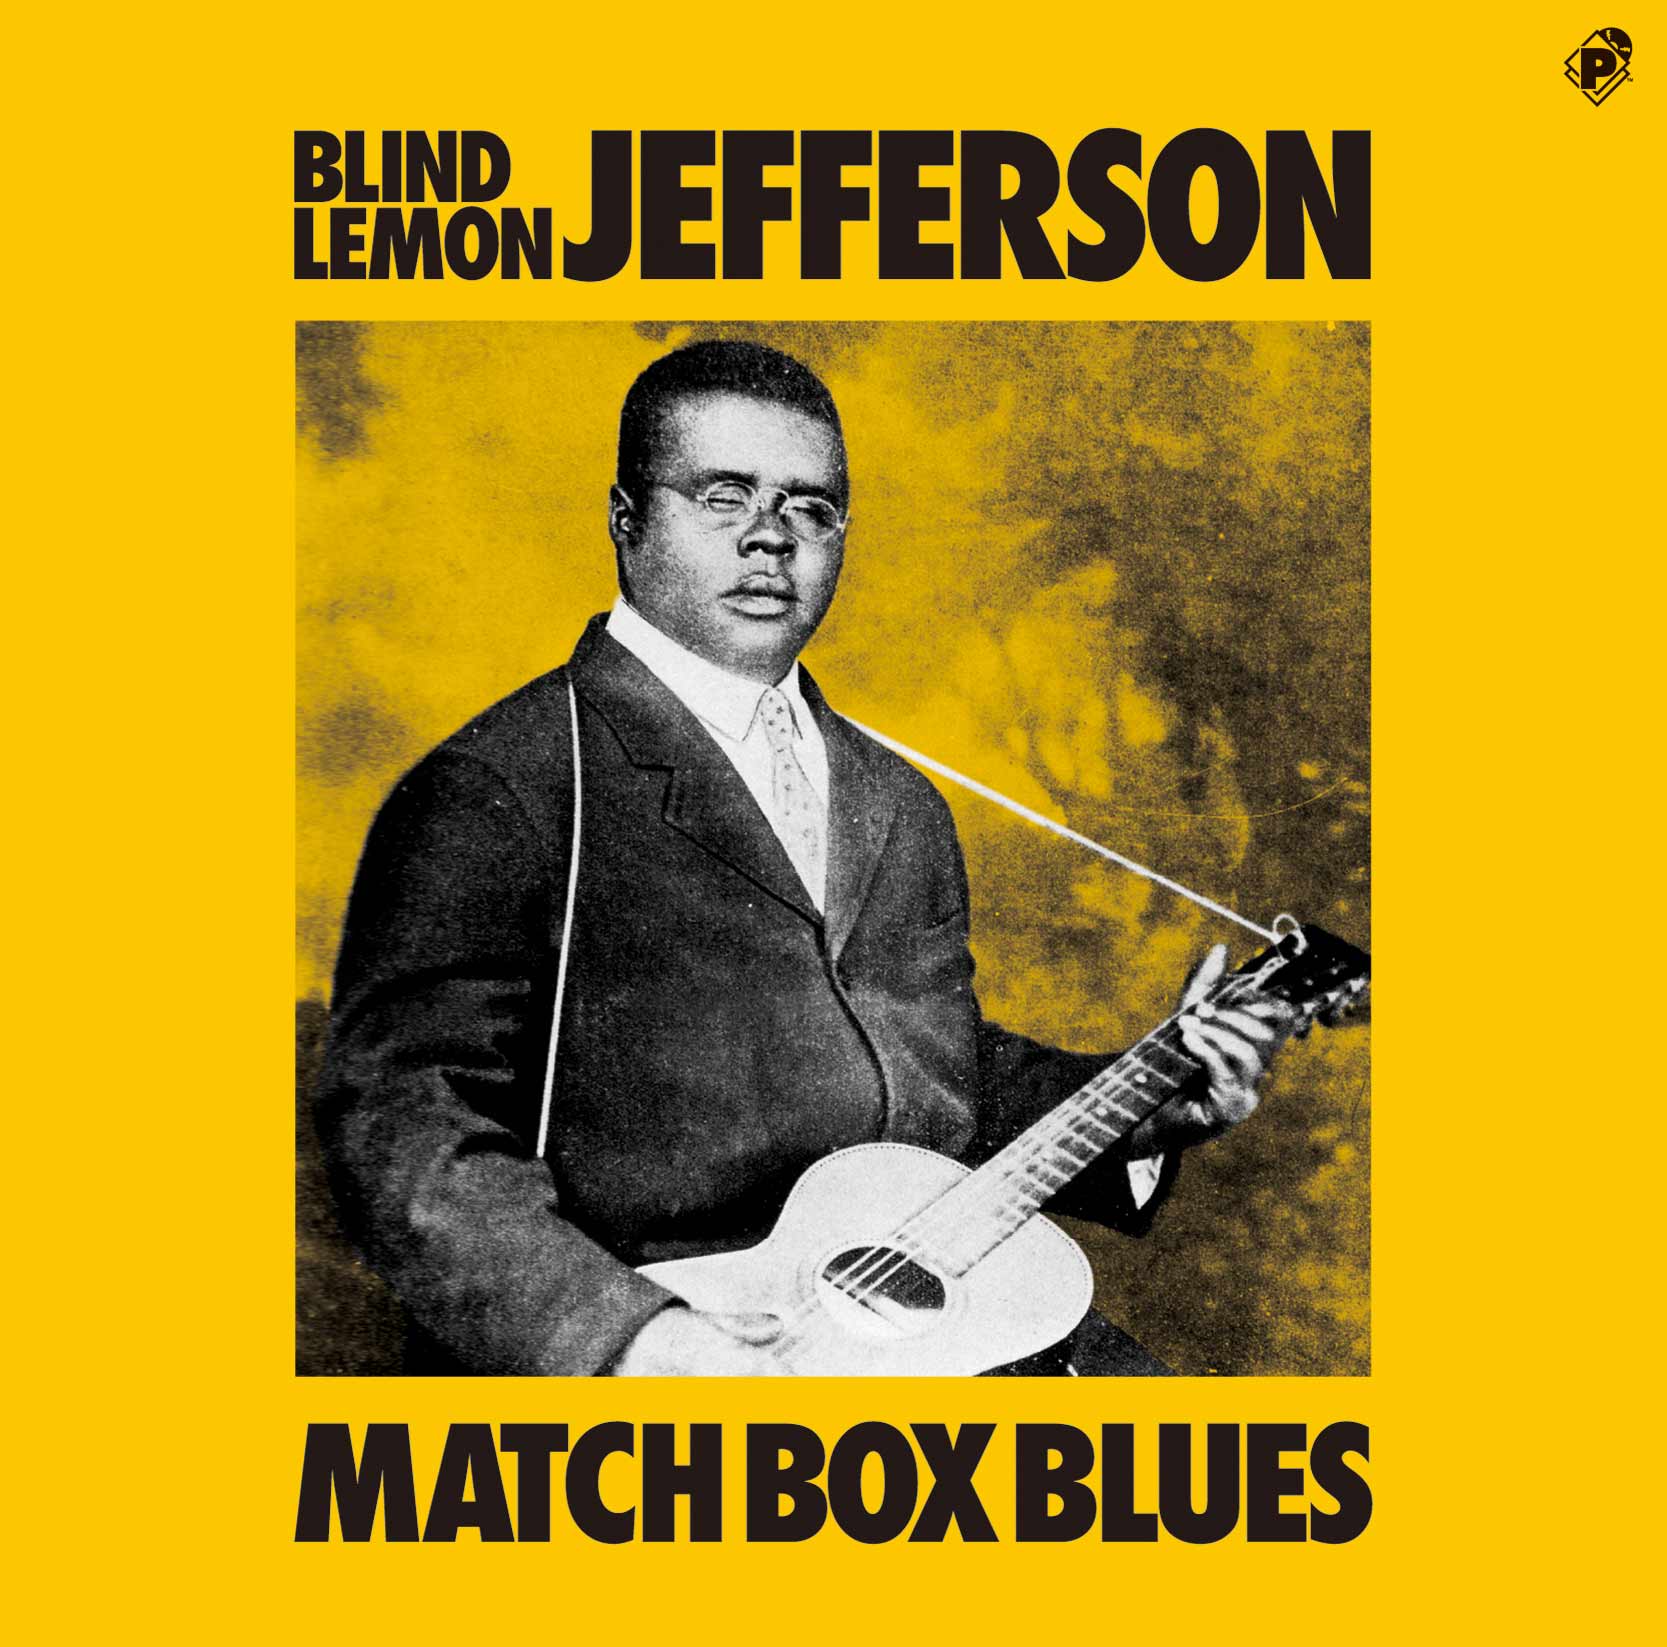 Match Box Blues